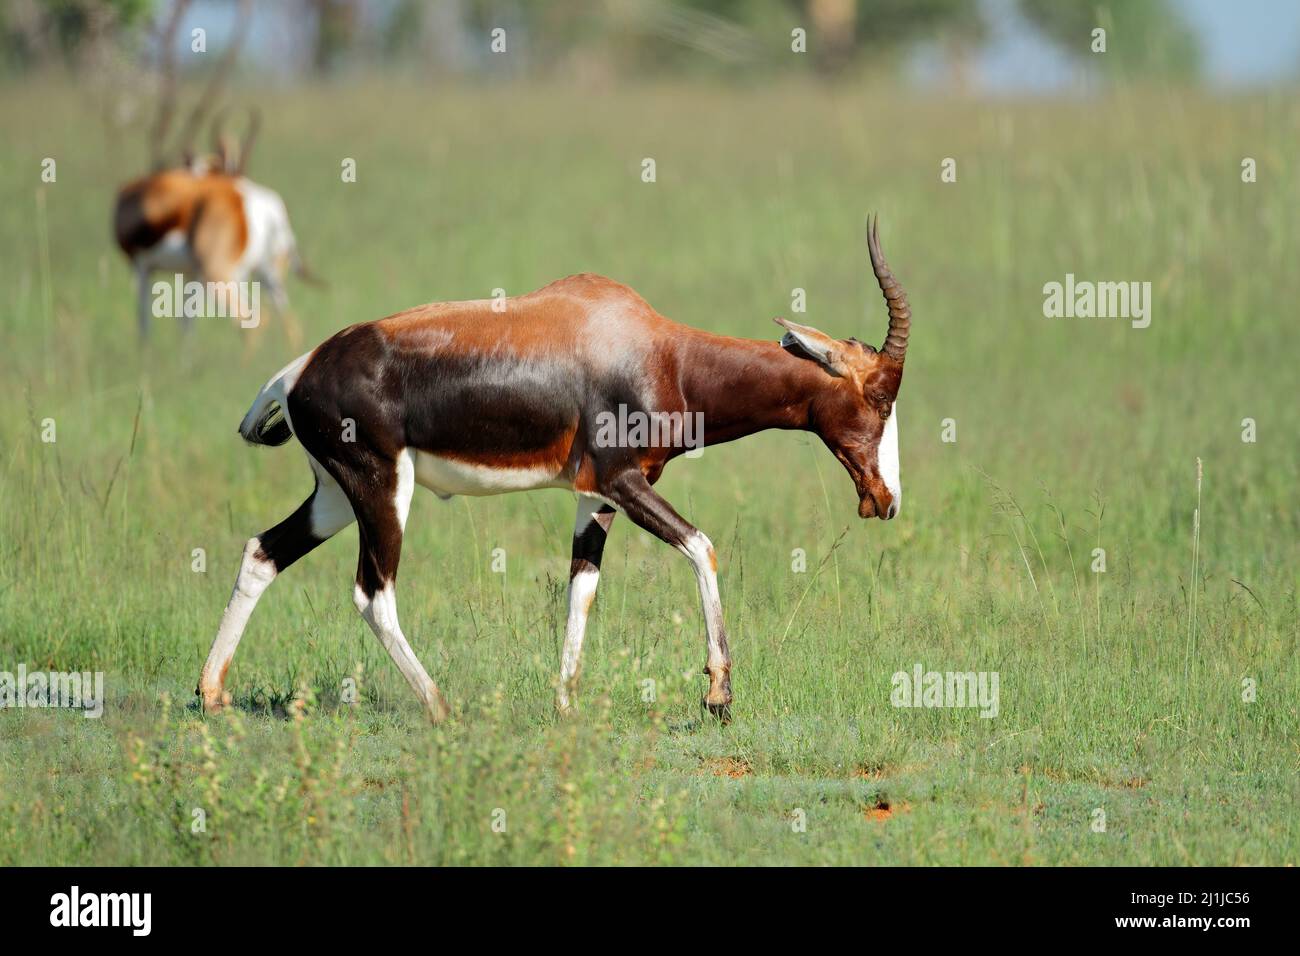 Antilope de bontebok (Damaliscus pygargus dorcas) en voie de disparition dans l'habitat naturel de l'Afrique du Sud Banque D'Images